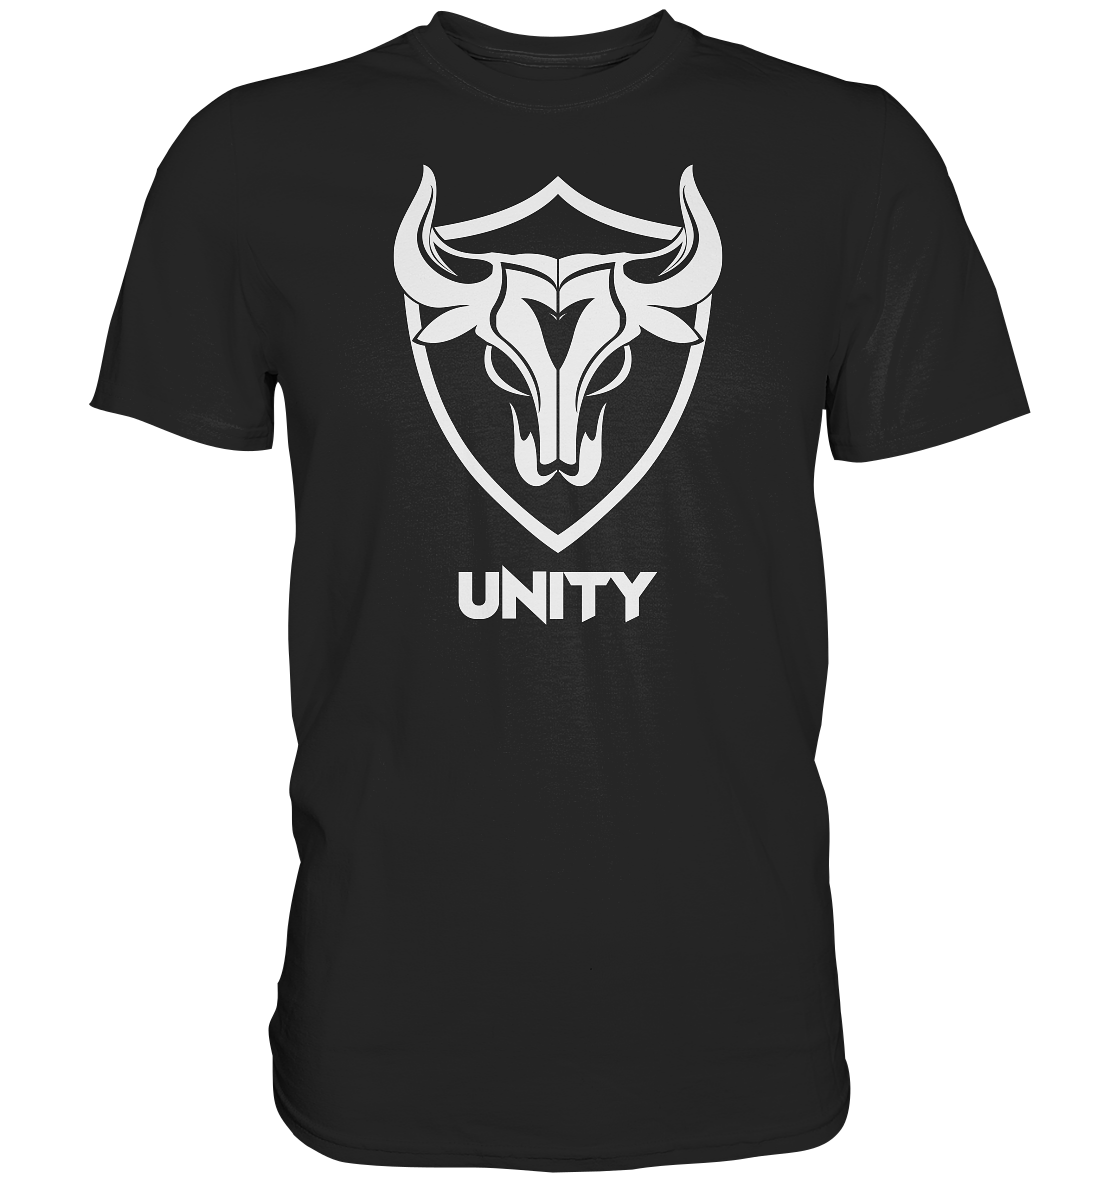 UNITY - Basic Shirt